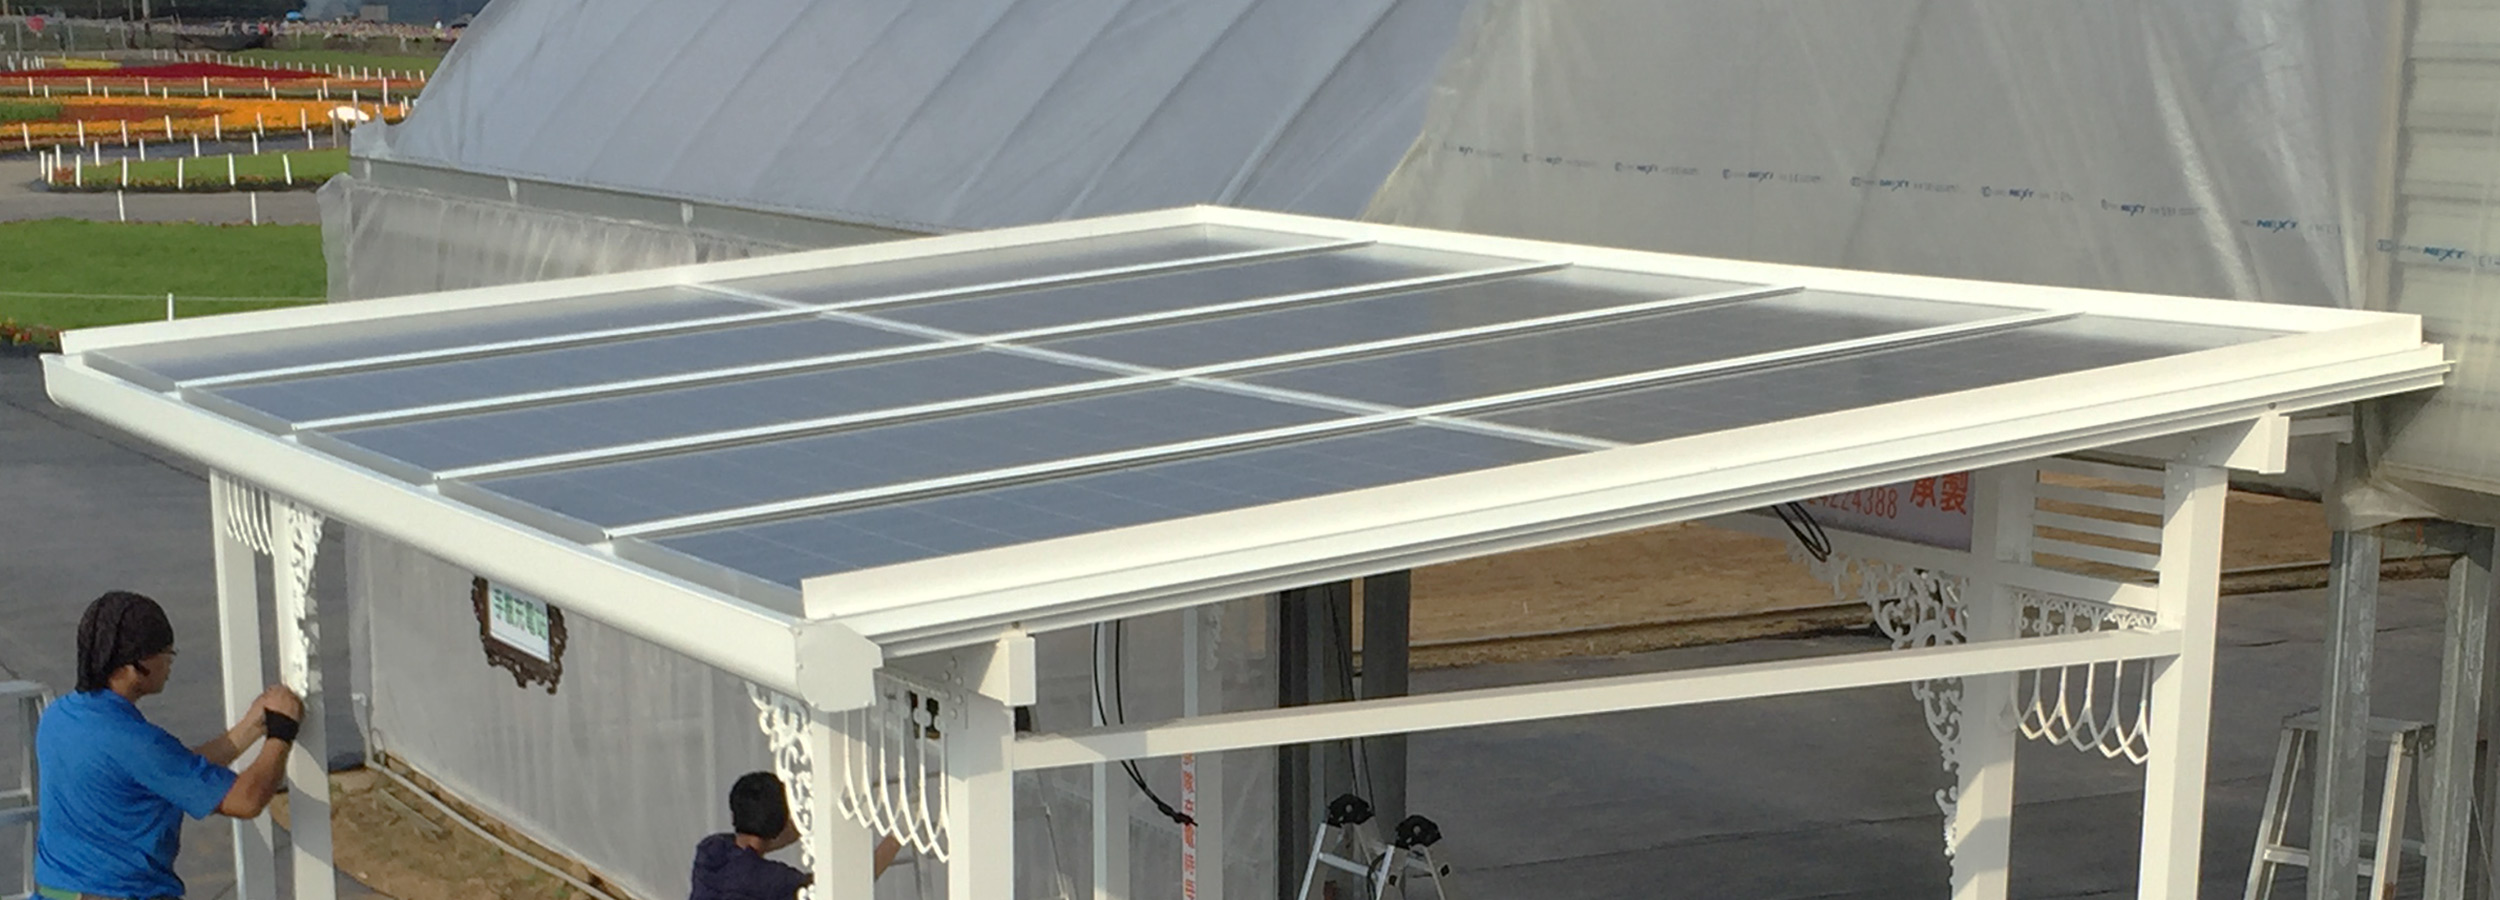 太陽能雨水回收遮雨棚